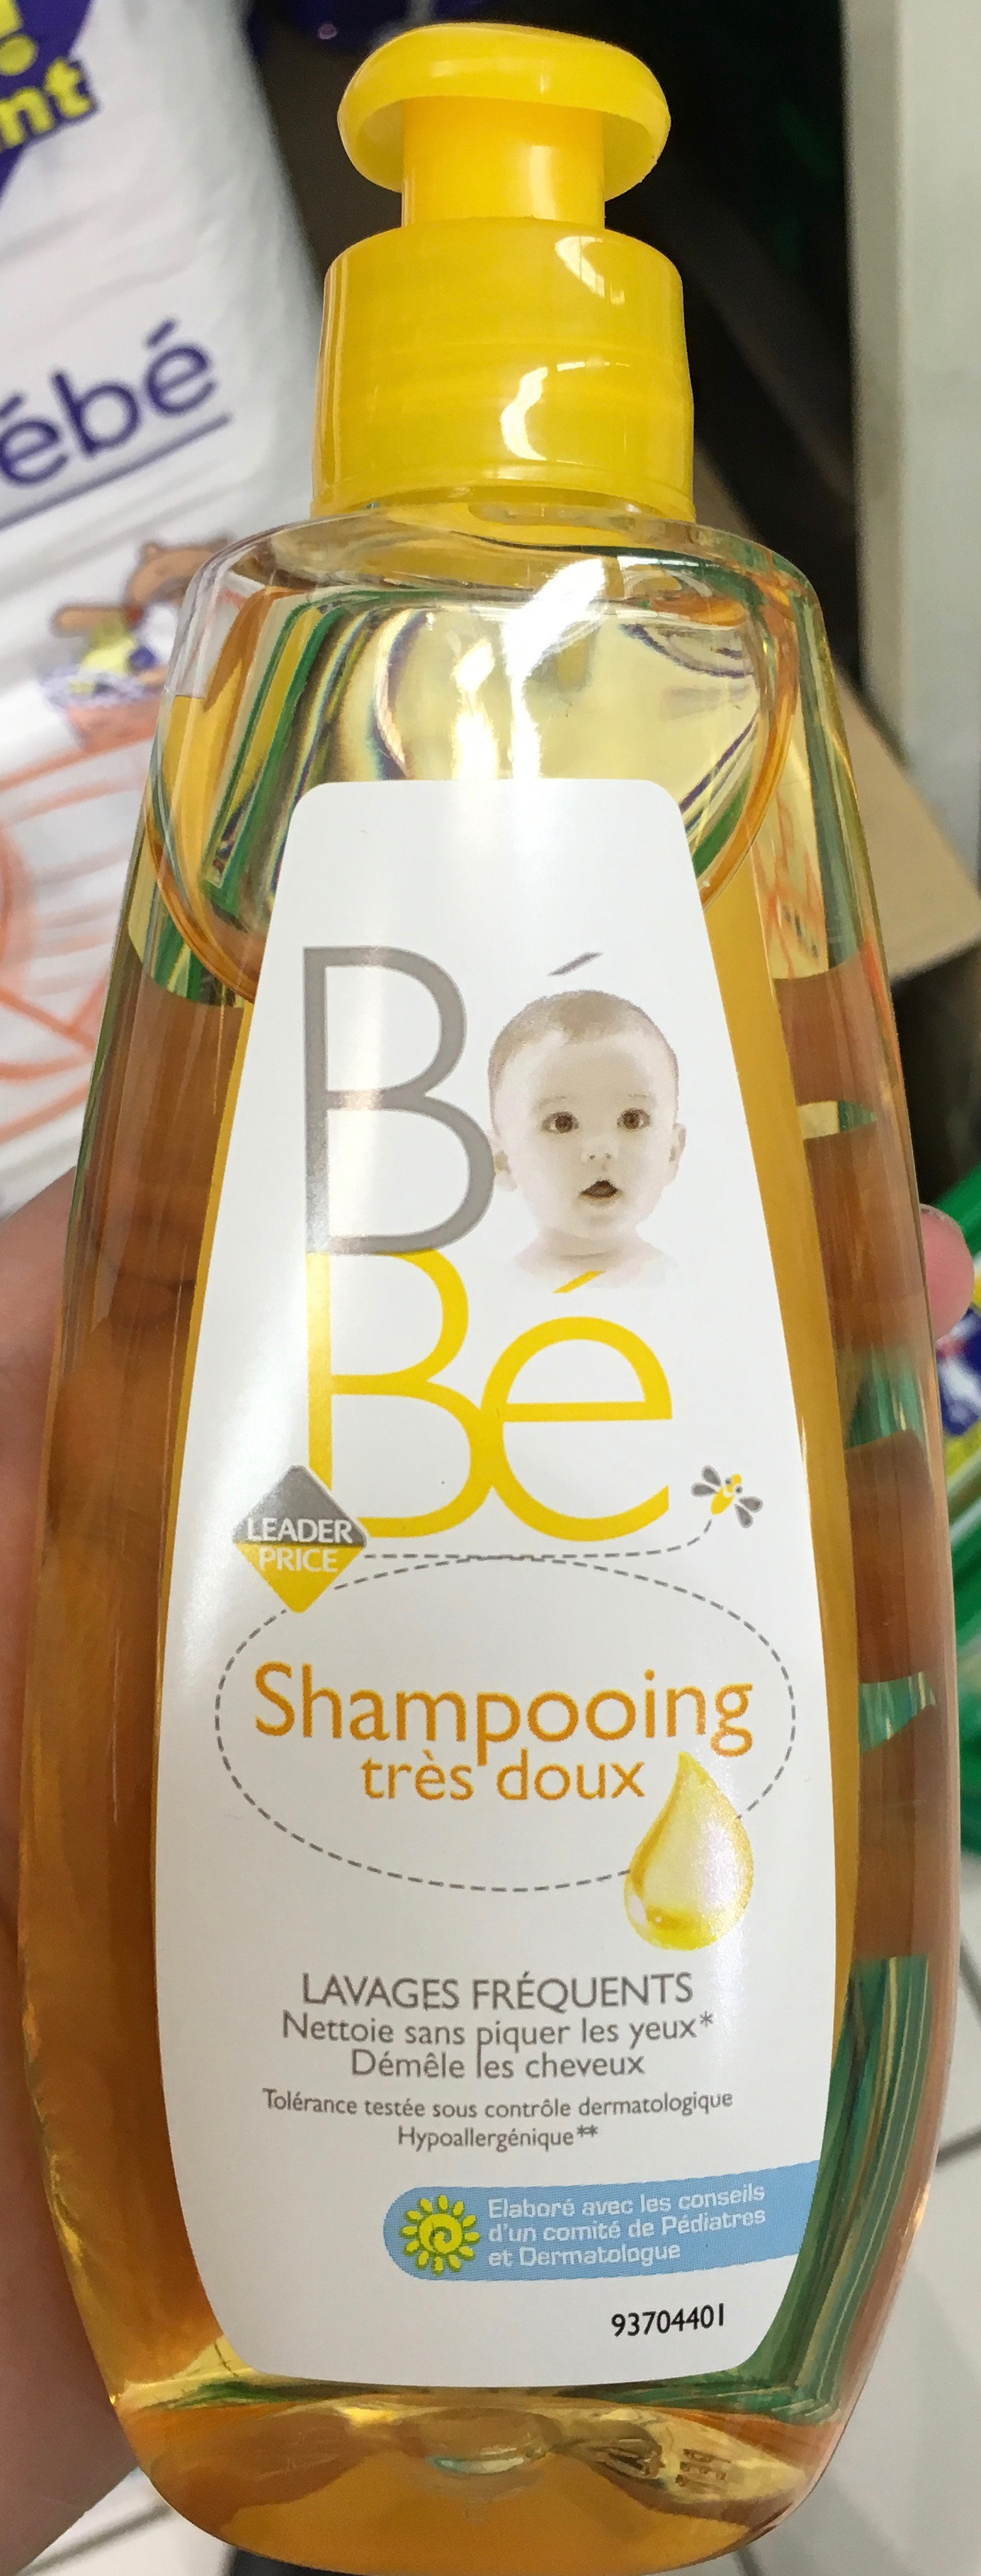 Bébé Shampooing très doux - Produit - fr